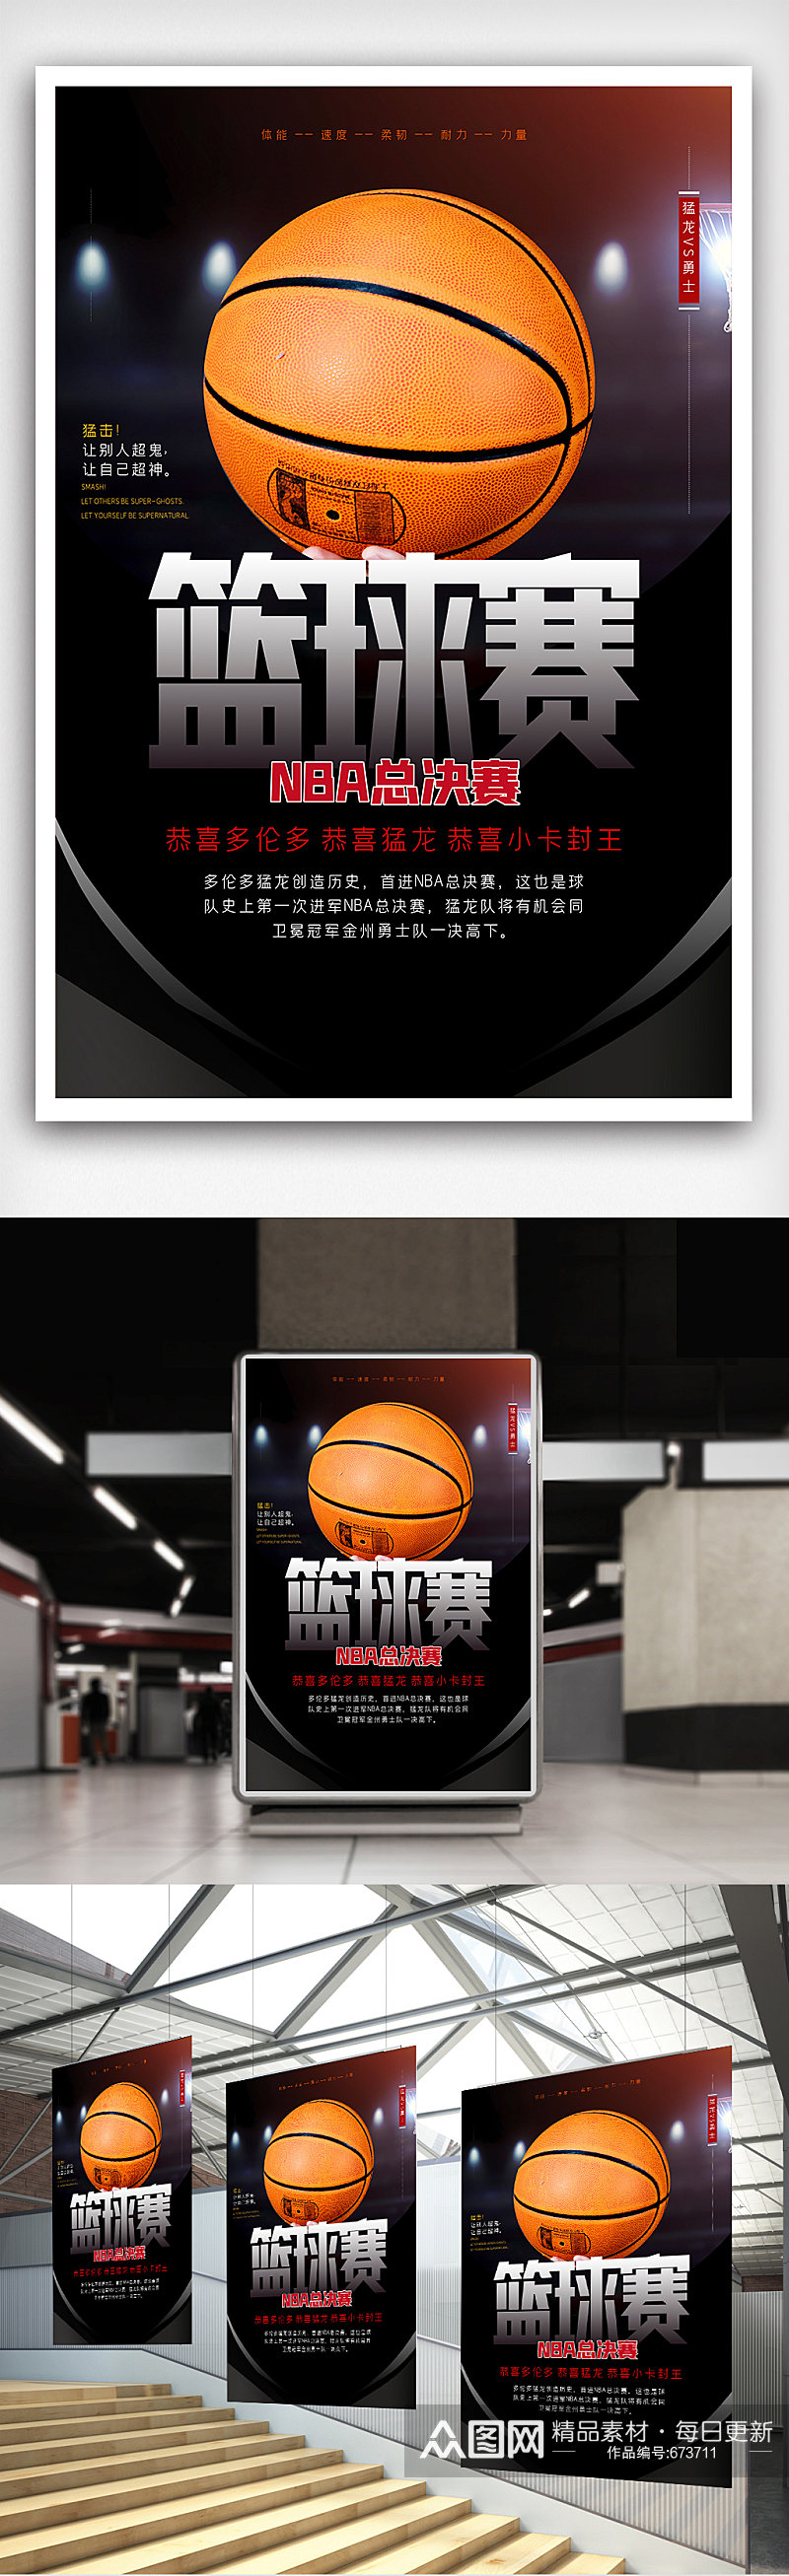 篮球赛创意宣传海报设计素材